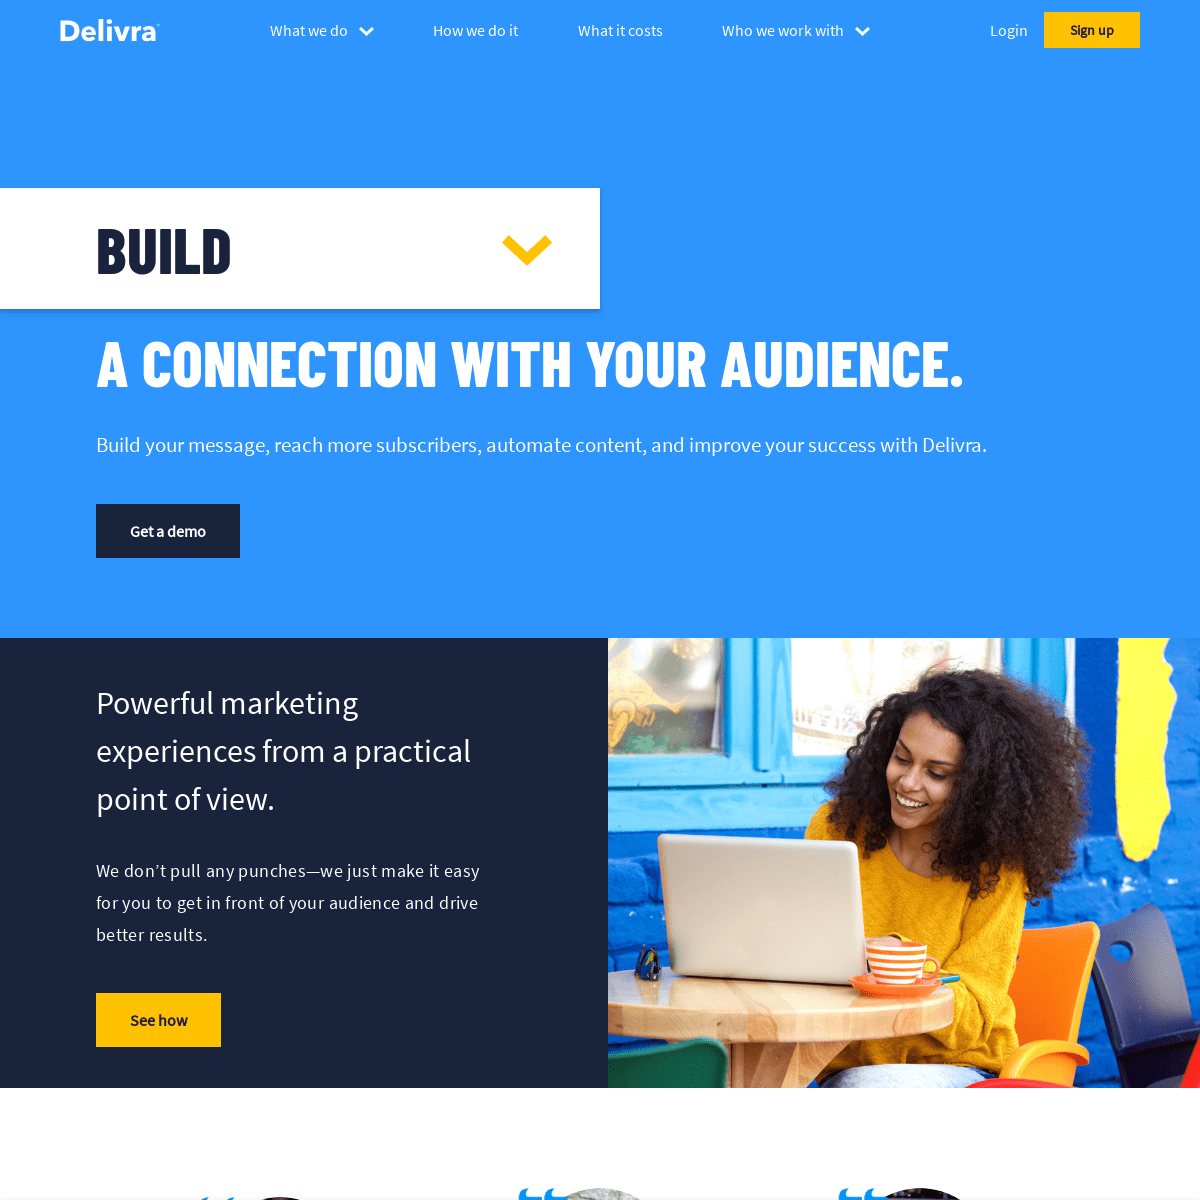 A complete backup of delivra.com